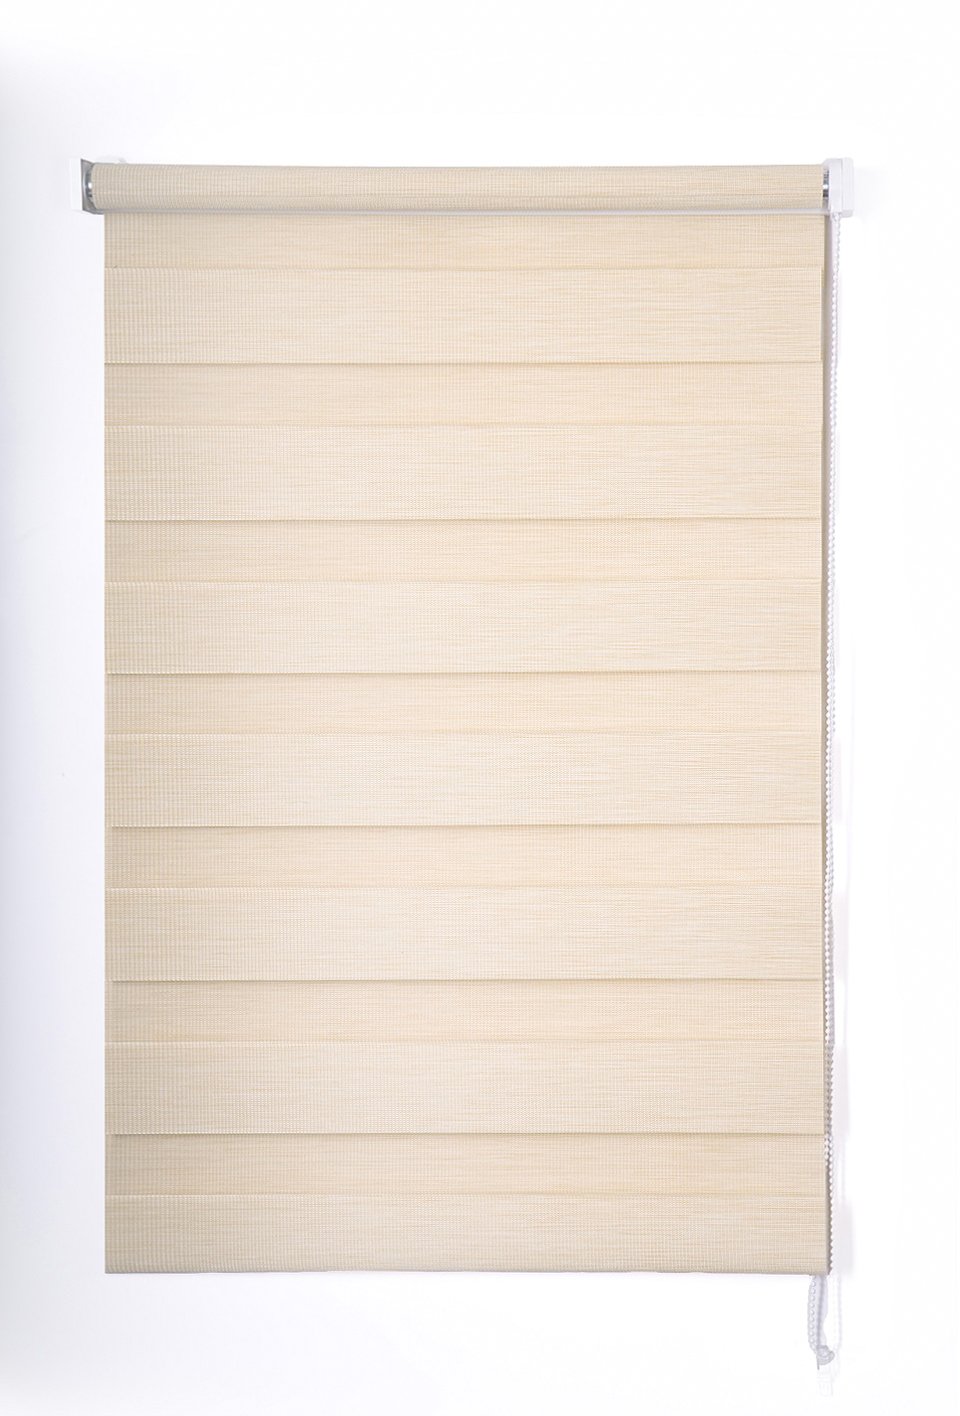 Klasikinė ritininė užuolaida VERONA D&N, smėlio sp., 140 x 170 cm, 100 % poliesteris